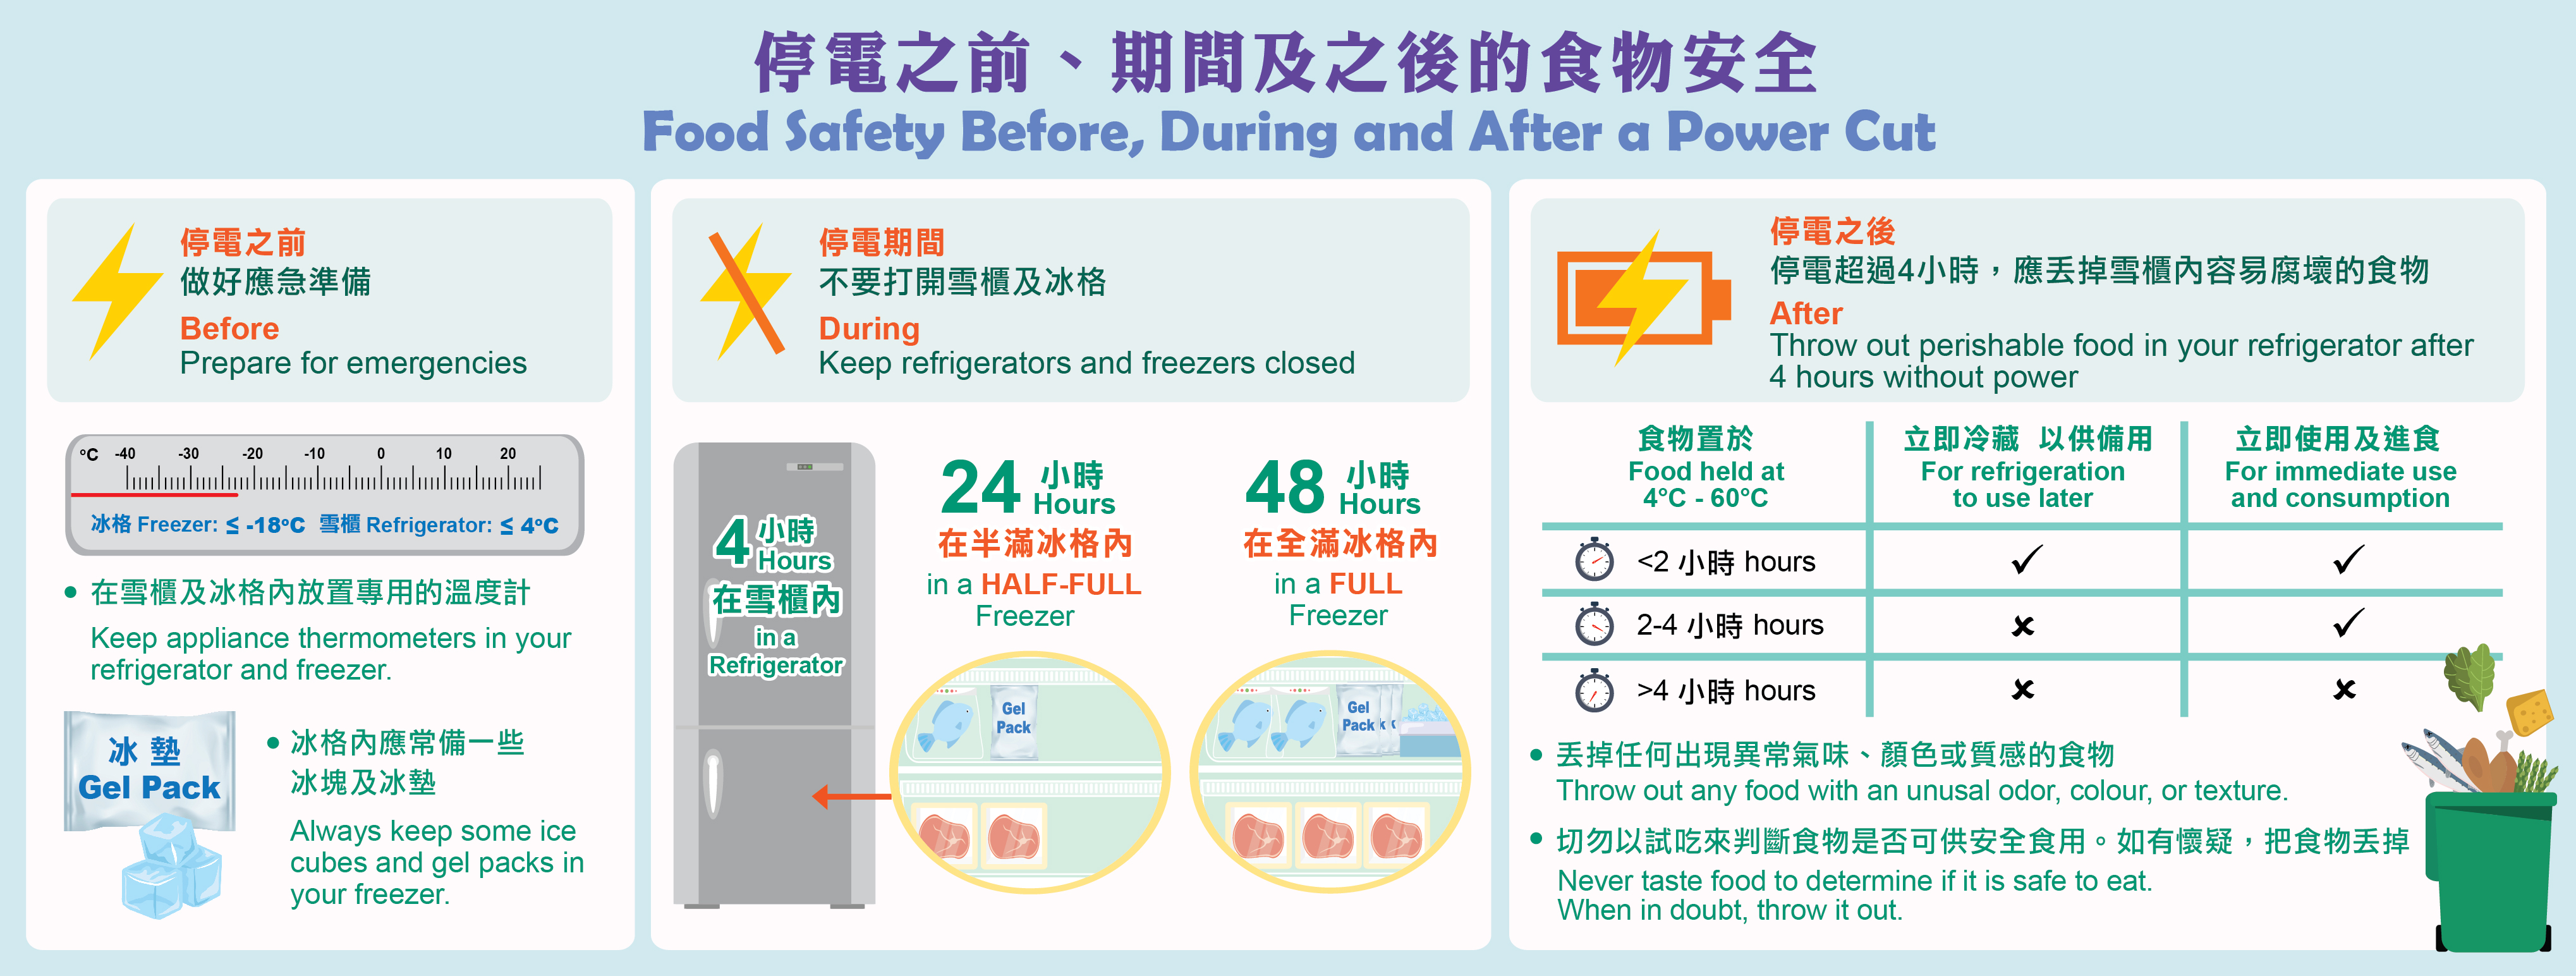 图2：停电之前、期间及之后的食物安全